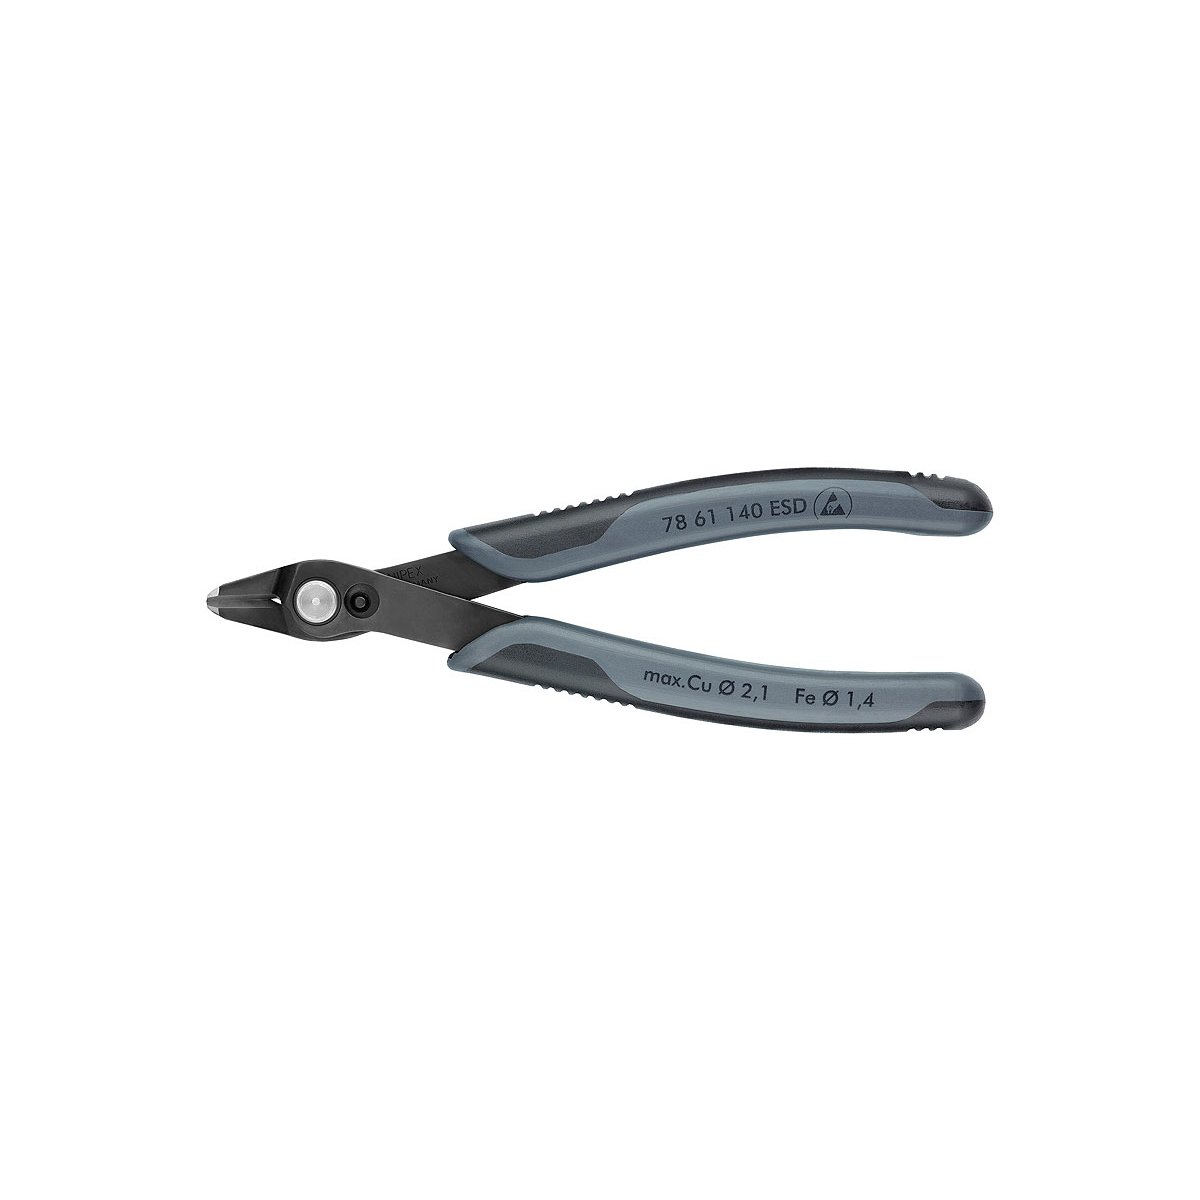 Electronic Super Knips® XL Бокорезы прецизионные ESD, для кабельных стяжек, нерж., 140 мм, 2-комп антистатические ручки